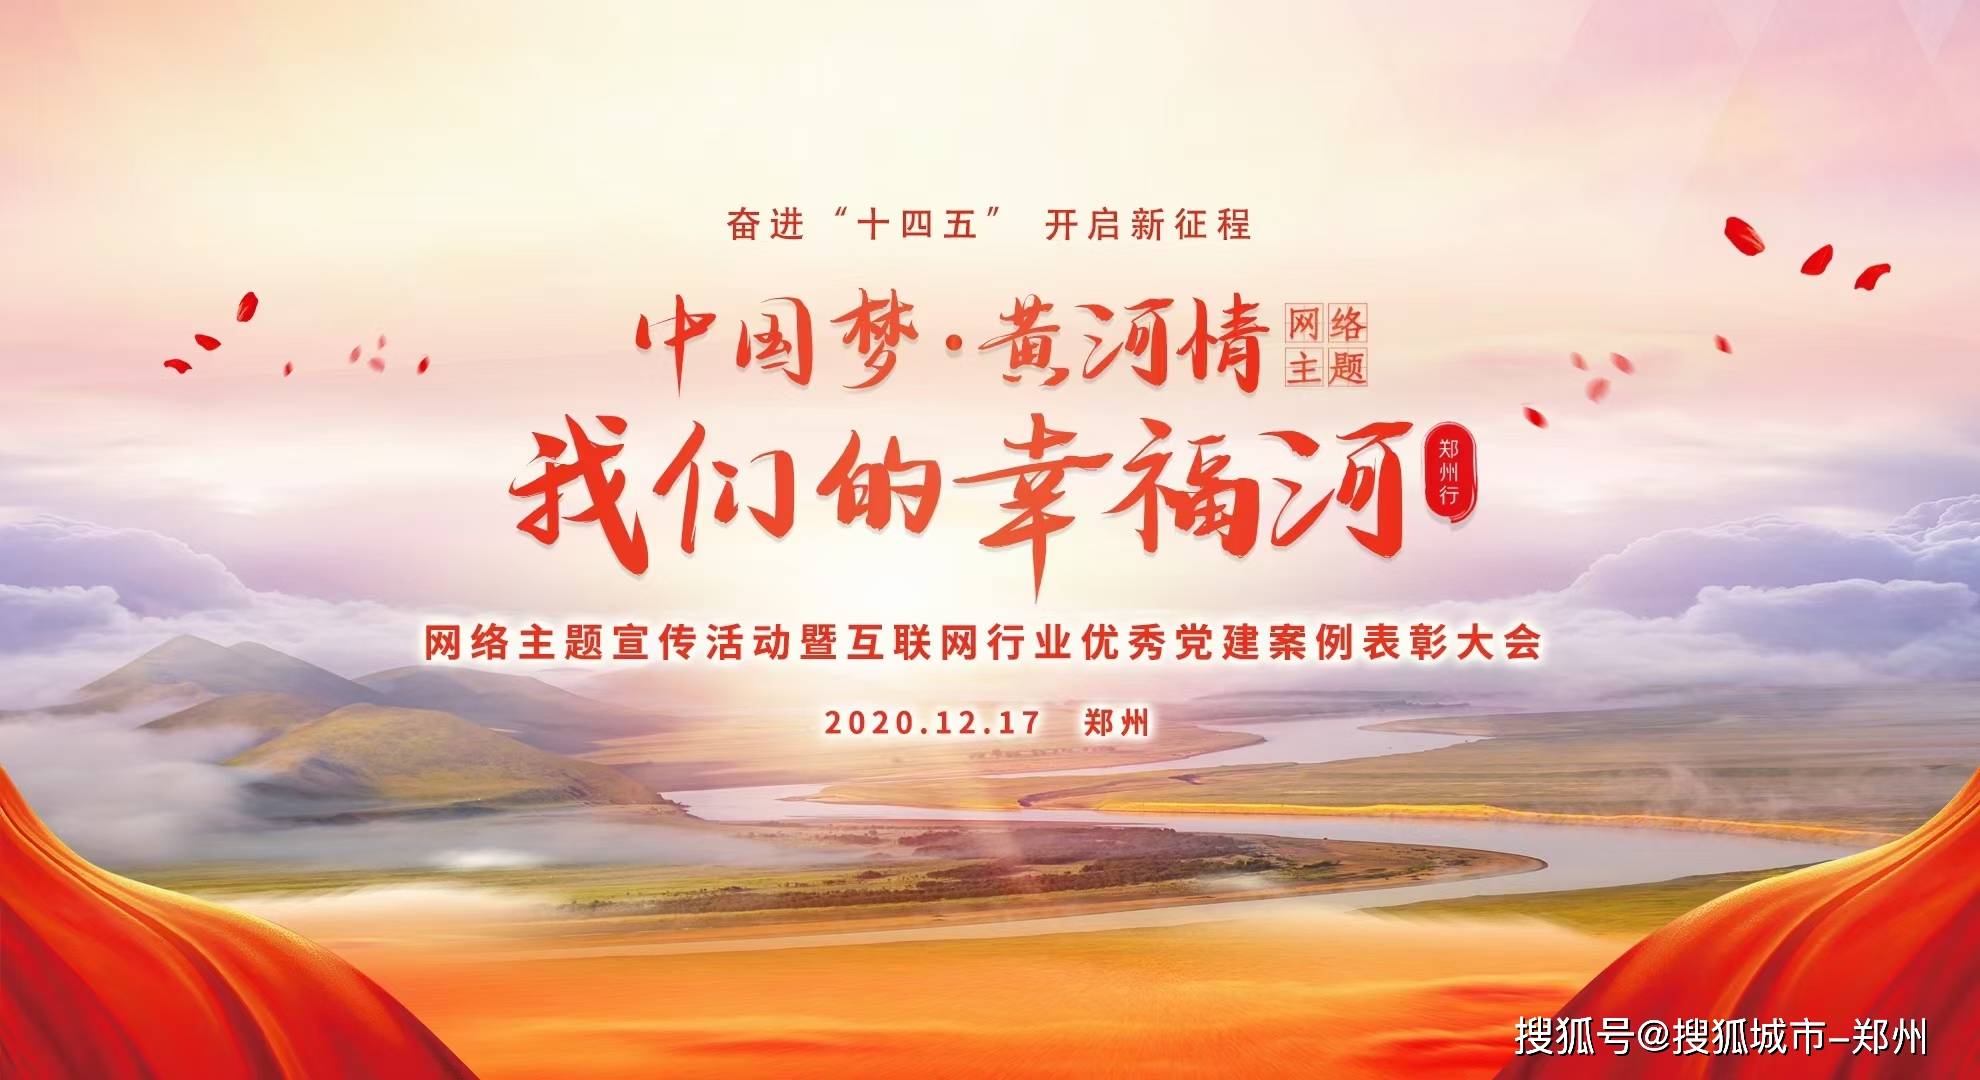 奋进"十四五",开启新征程,搜狐河南荣获网络主题宣传活动优秀网络媒体